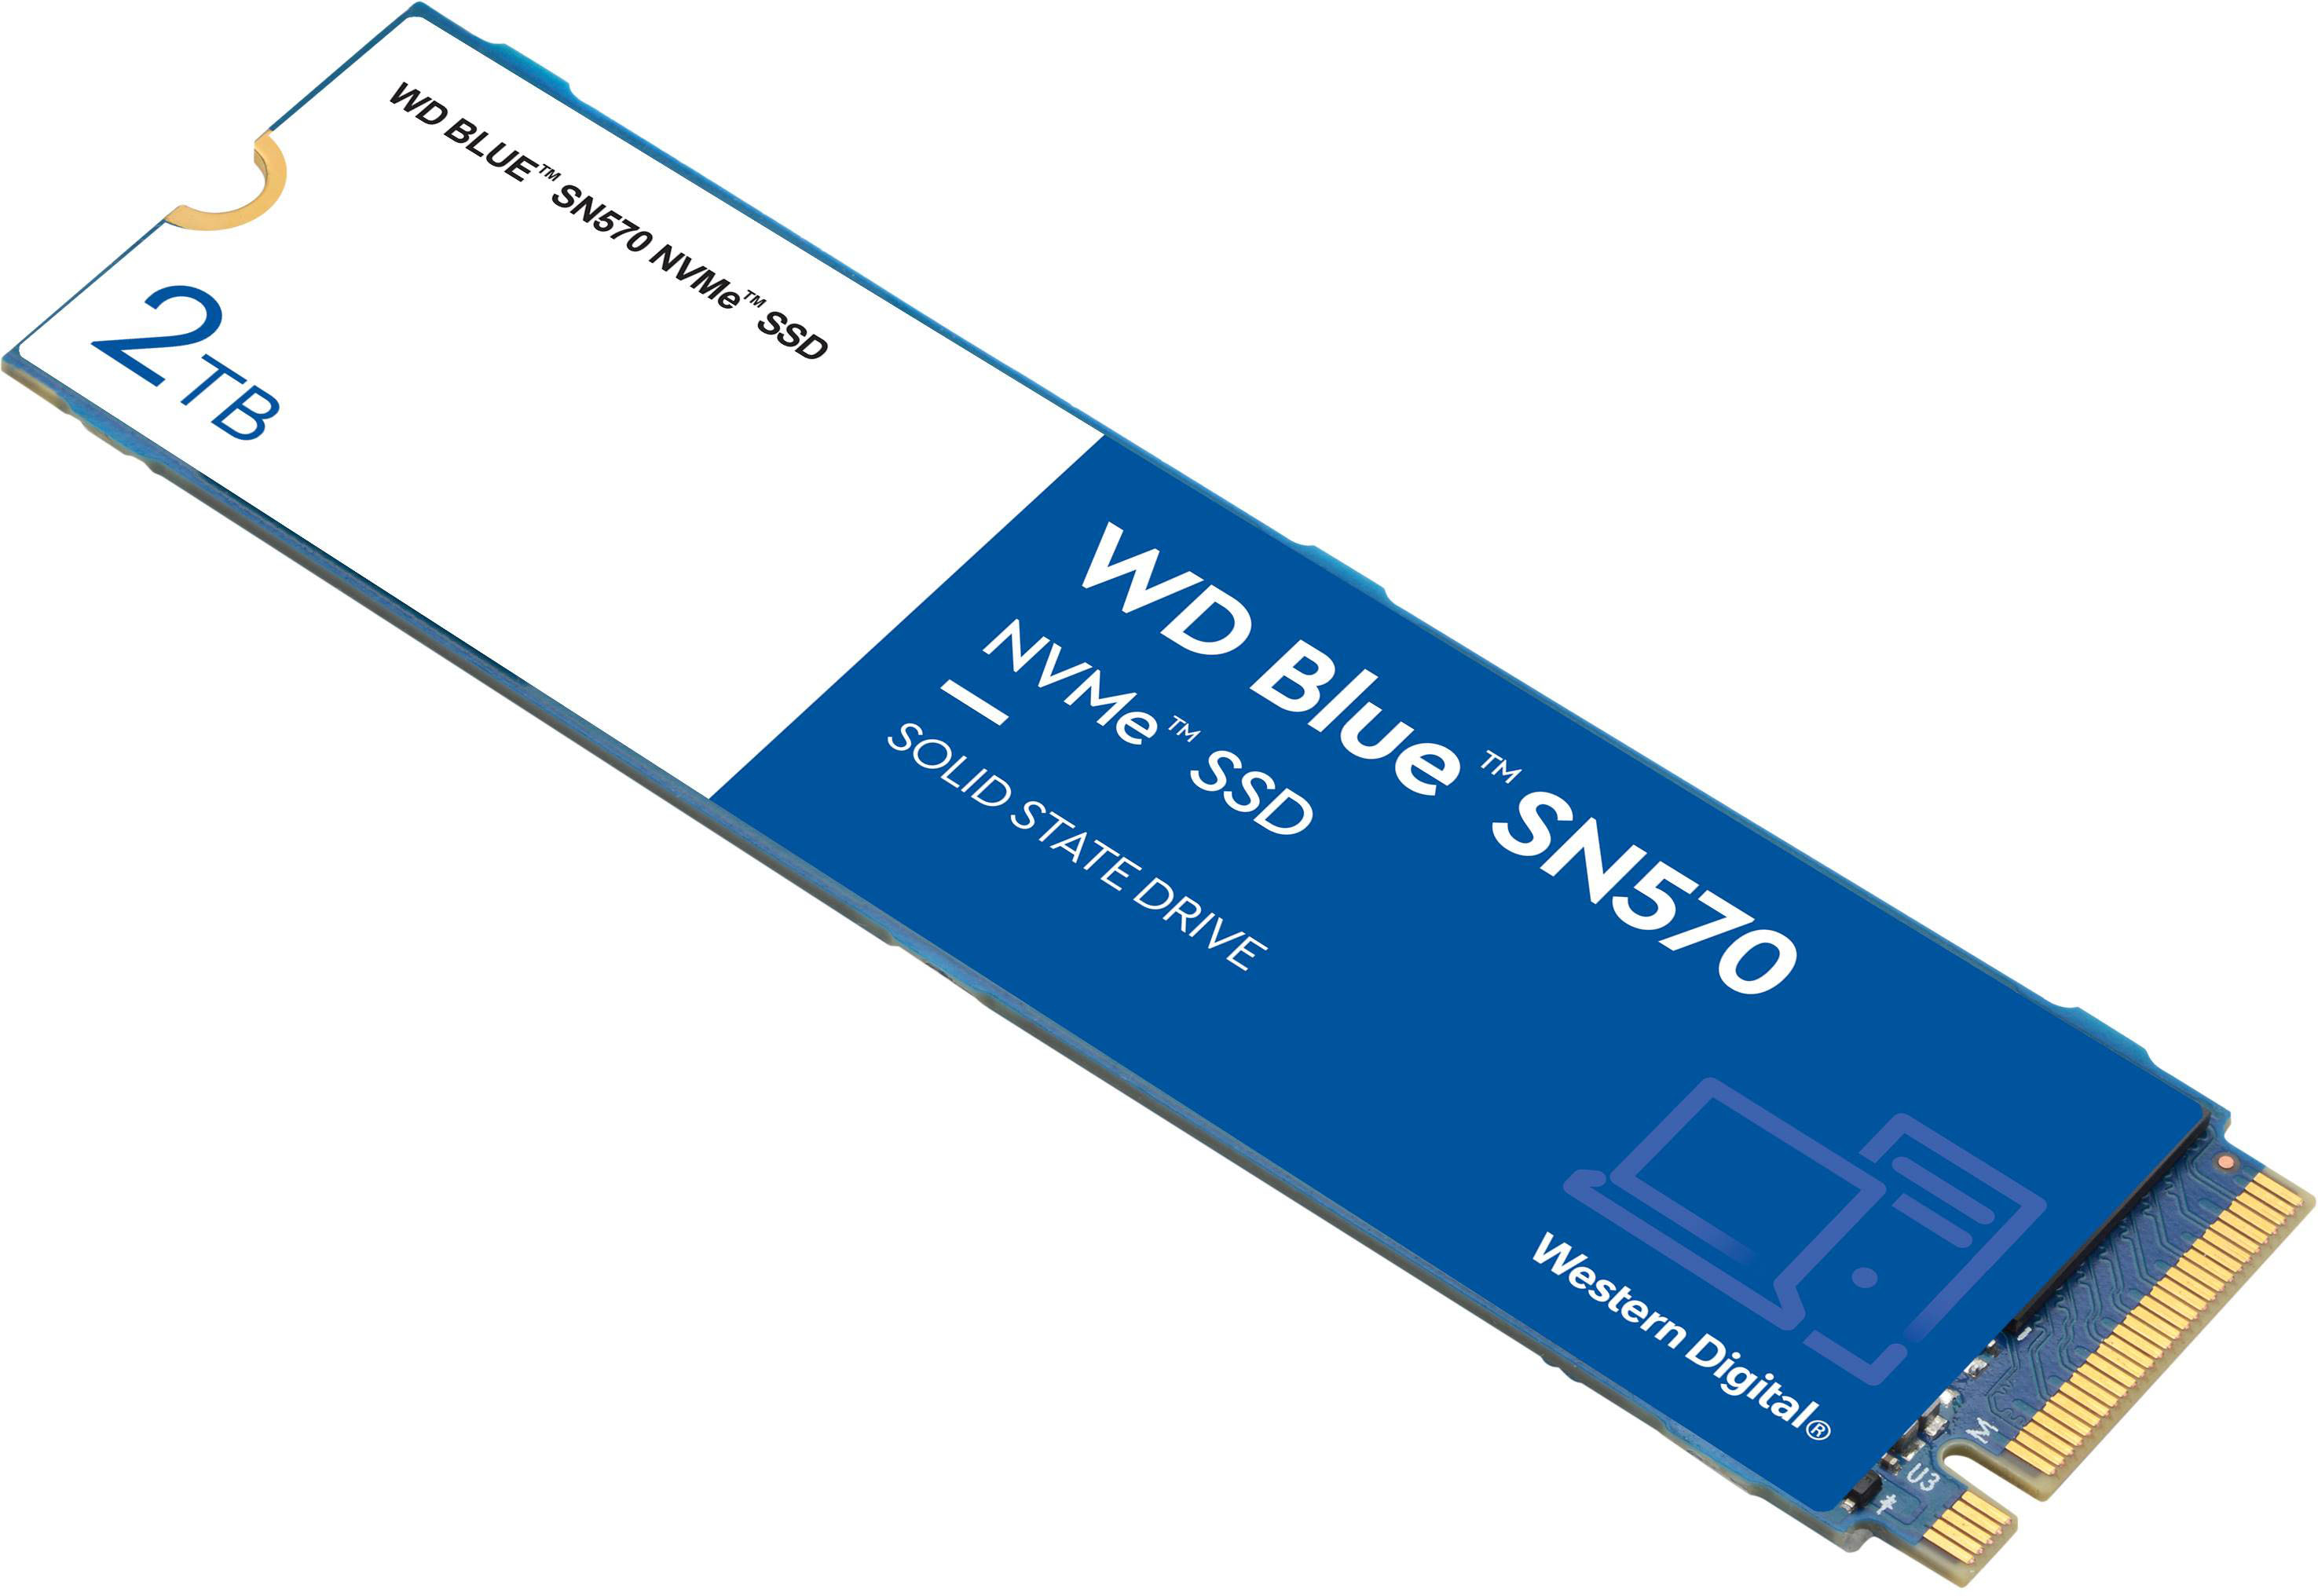 2TB WD Blue SN570 NVMe SSD $171